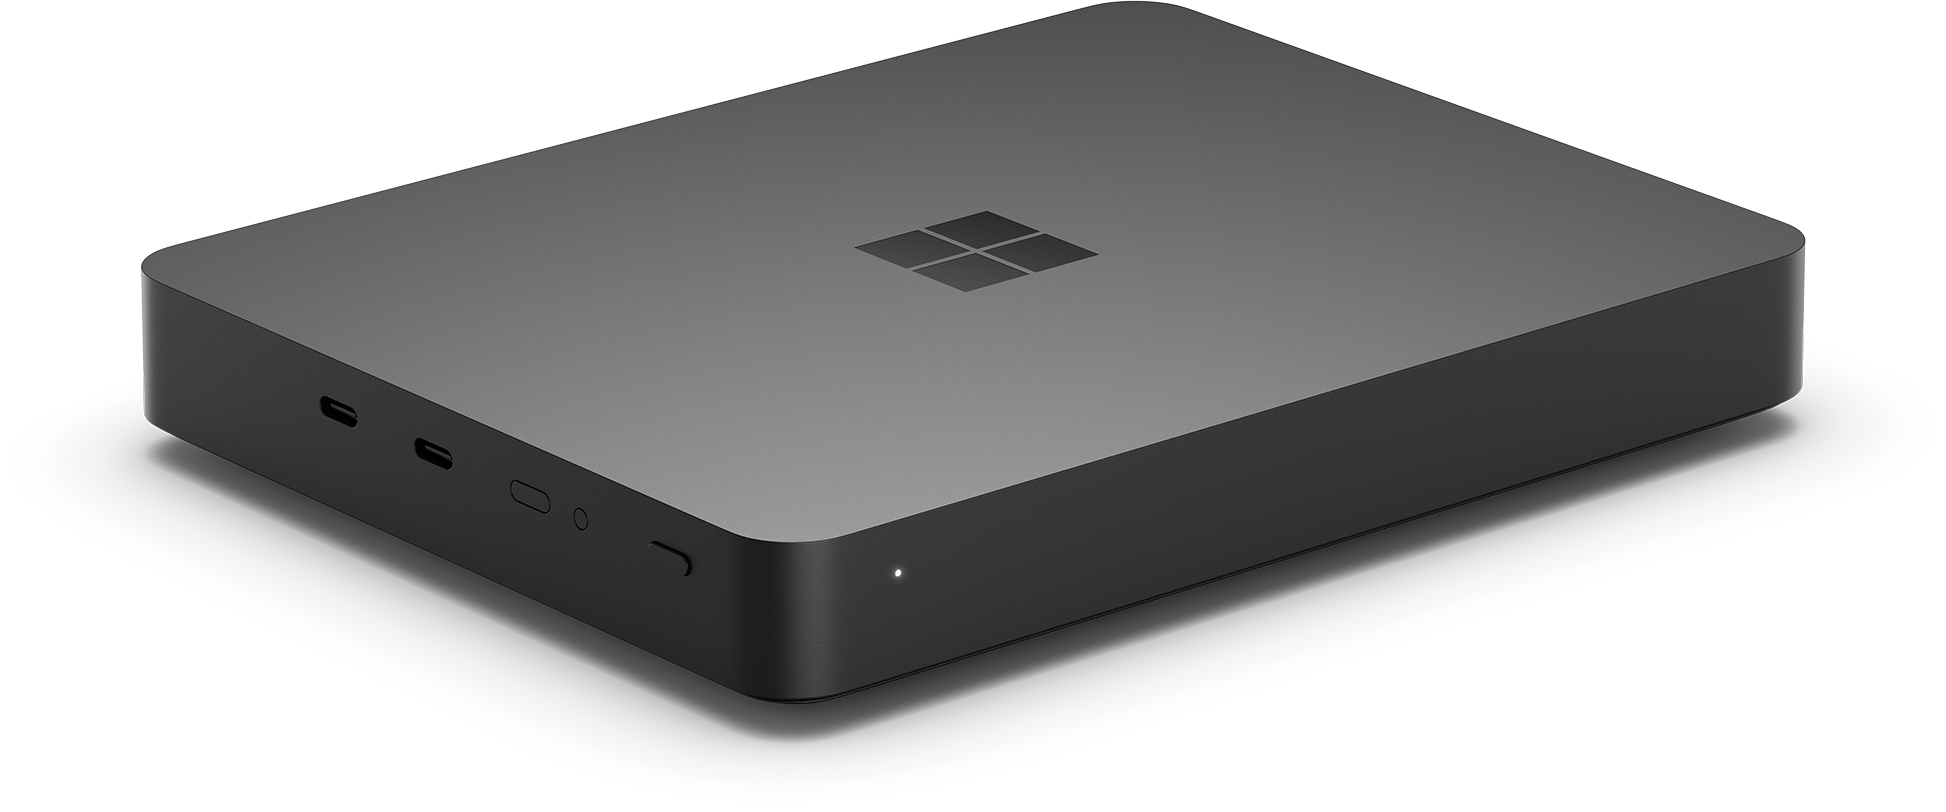 Buy Windows Dev Kit 2023 Desktop PC for Arm App Developers Microsoft